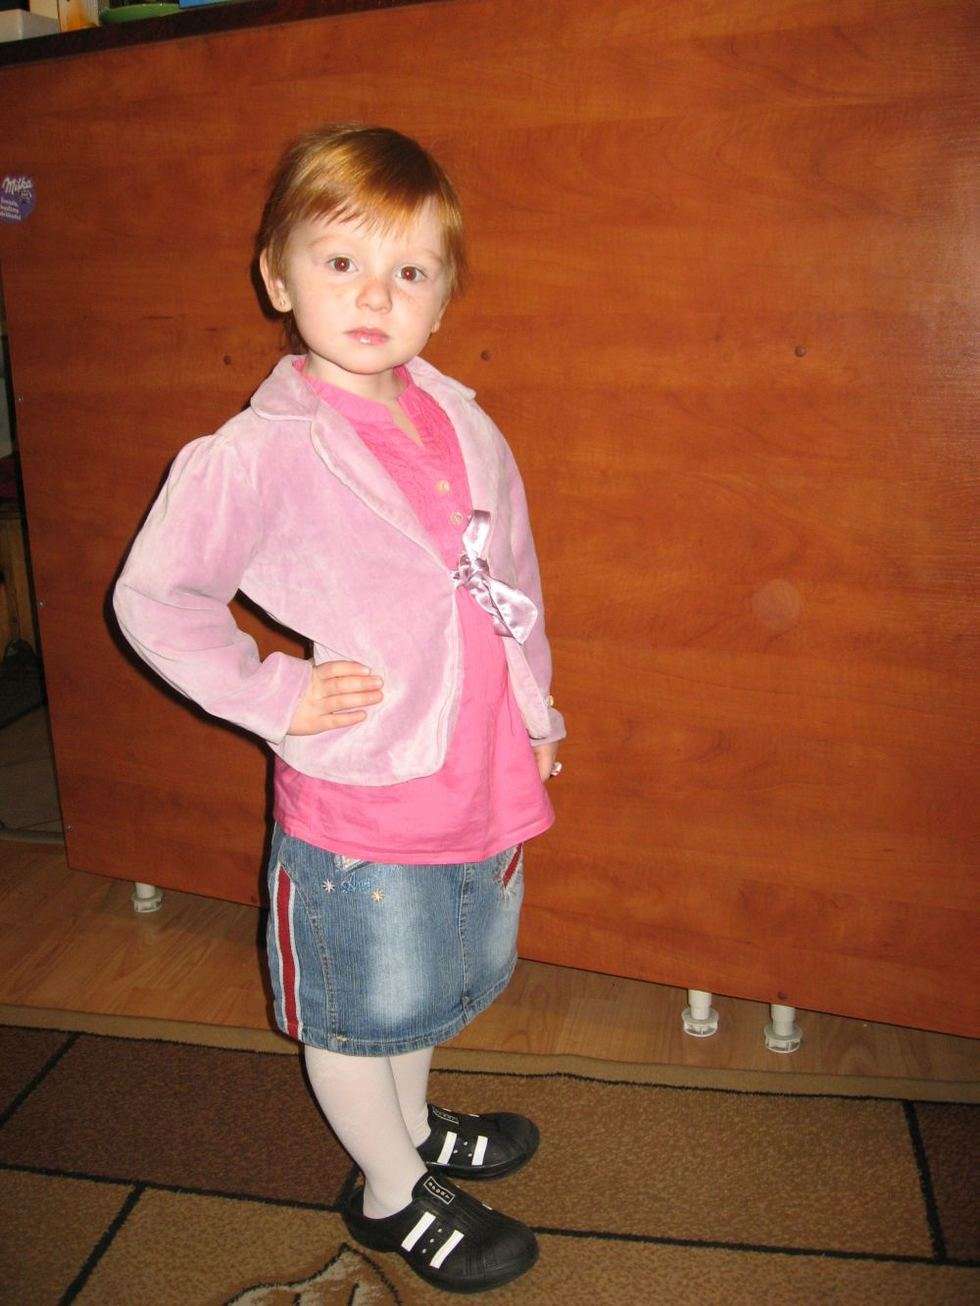  Aleksandra Piskorska, 3 lata. Jest bardzo wesołym i energicznym dzieckiem. Chodzi do przedszkola, gdzie jest bardzo aktywna i uczęszcza na naukę tańca. Gdy tylko usłyszy muzykę od razu zaczyna tańczyć. Lubi śpiewać, tańczyć oraz rysować.